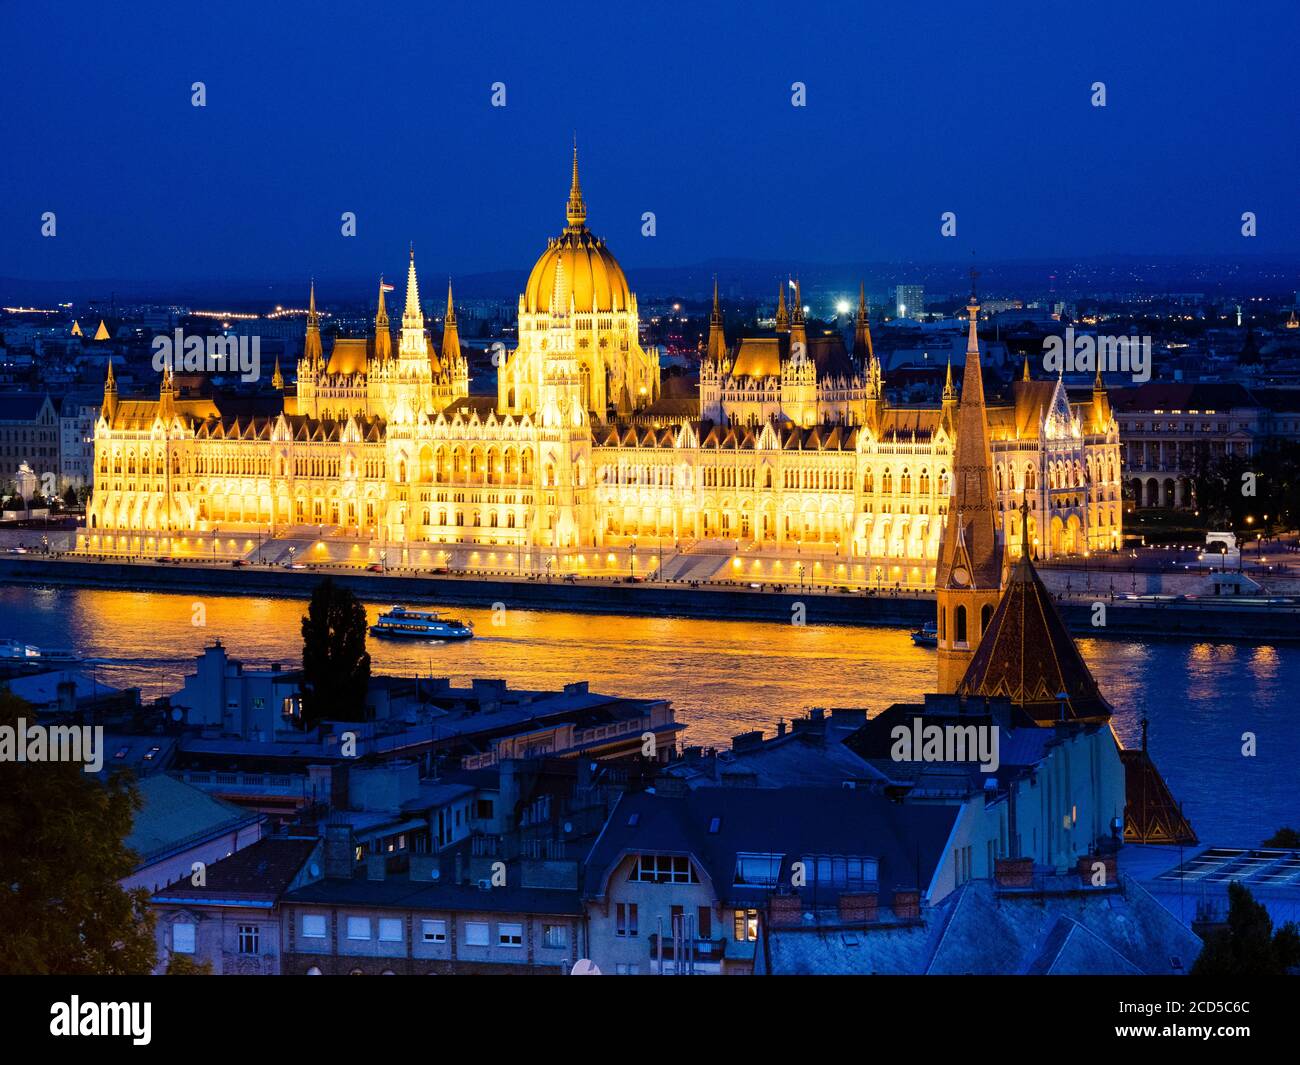 Avis du Parlement dans la nuit, Budapest, Hongrie Banque D'Images